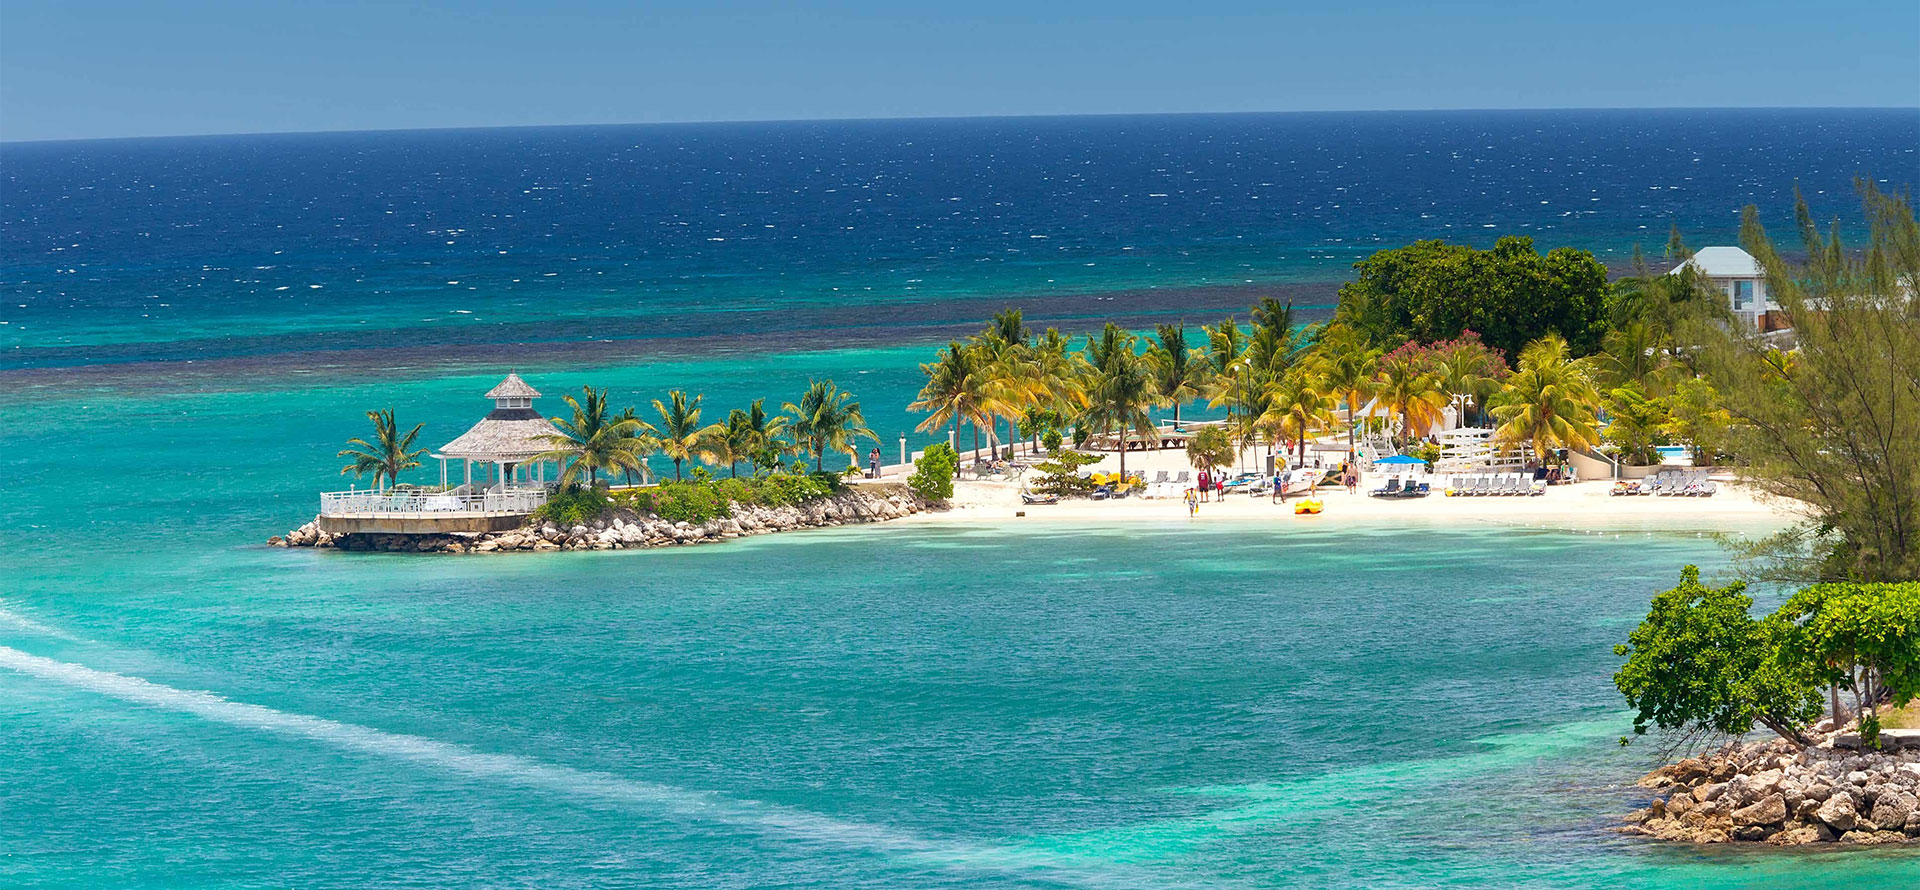 Jamaica honeymoon resorts top view.